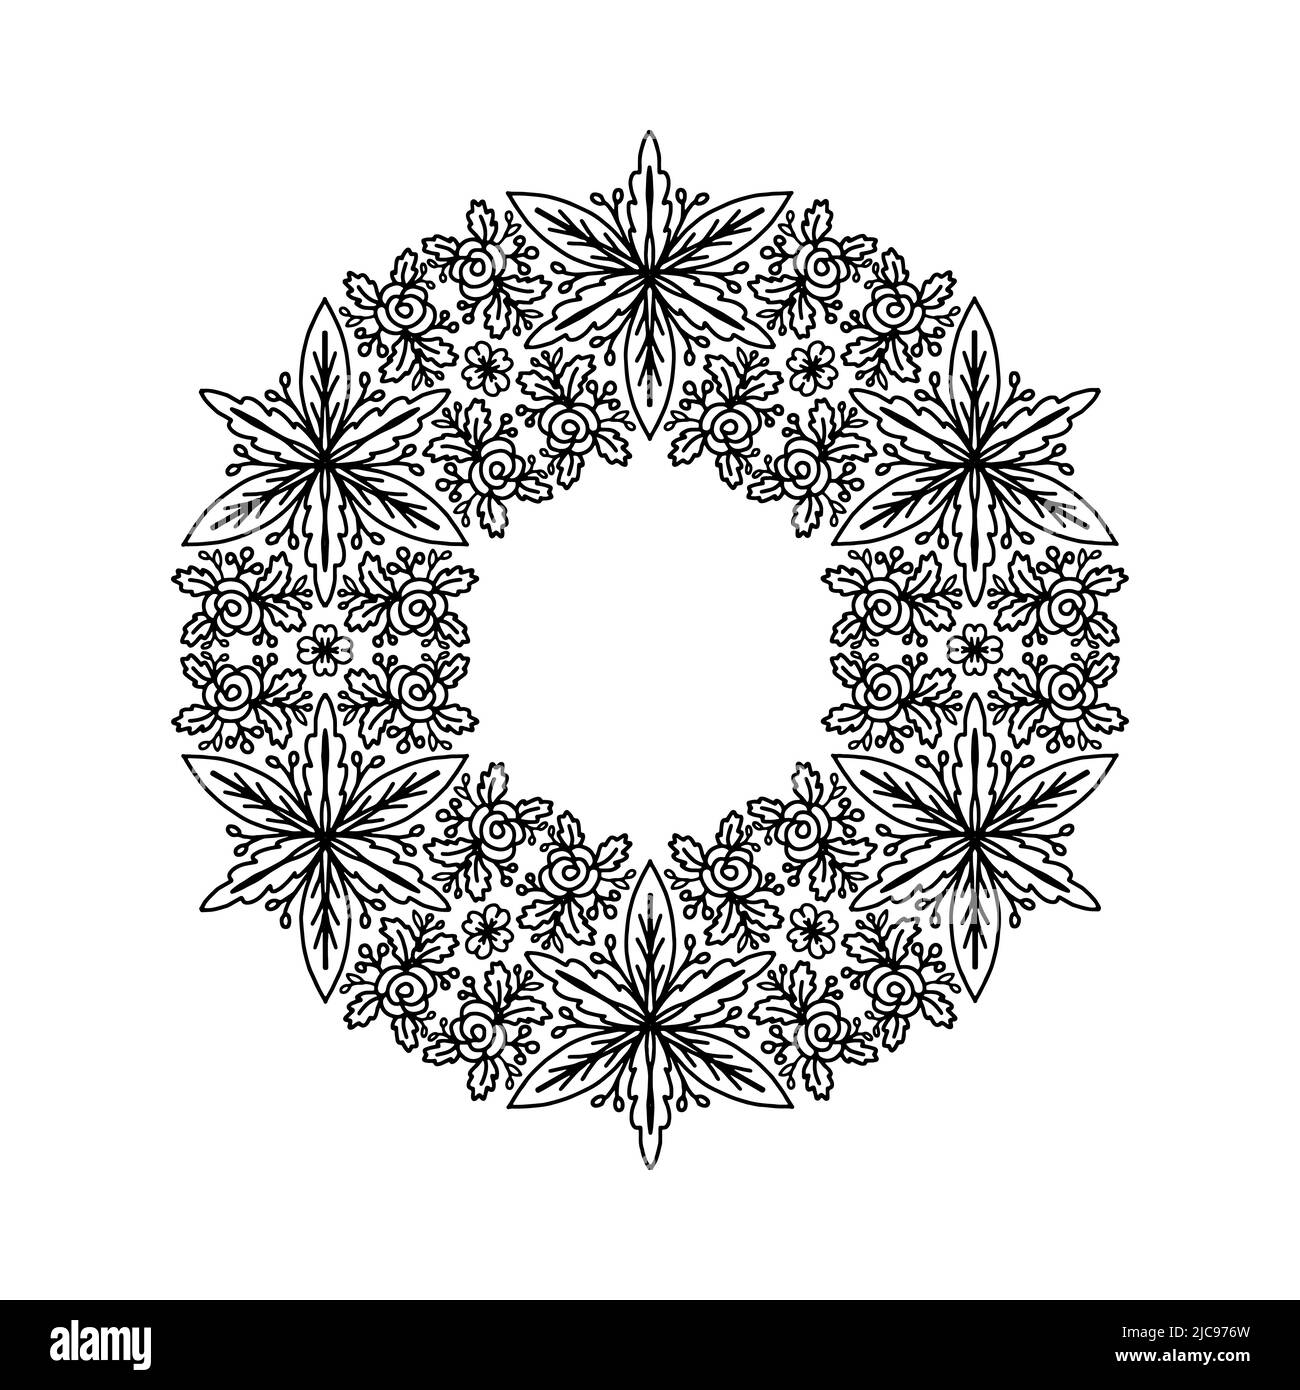 Schwarz-weißes Blumenmandala für Design-Karte, Einladungen oder colorin Seite Stock Vektor